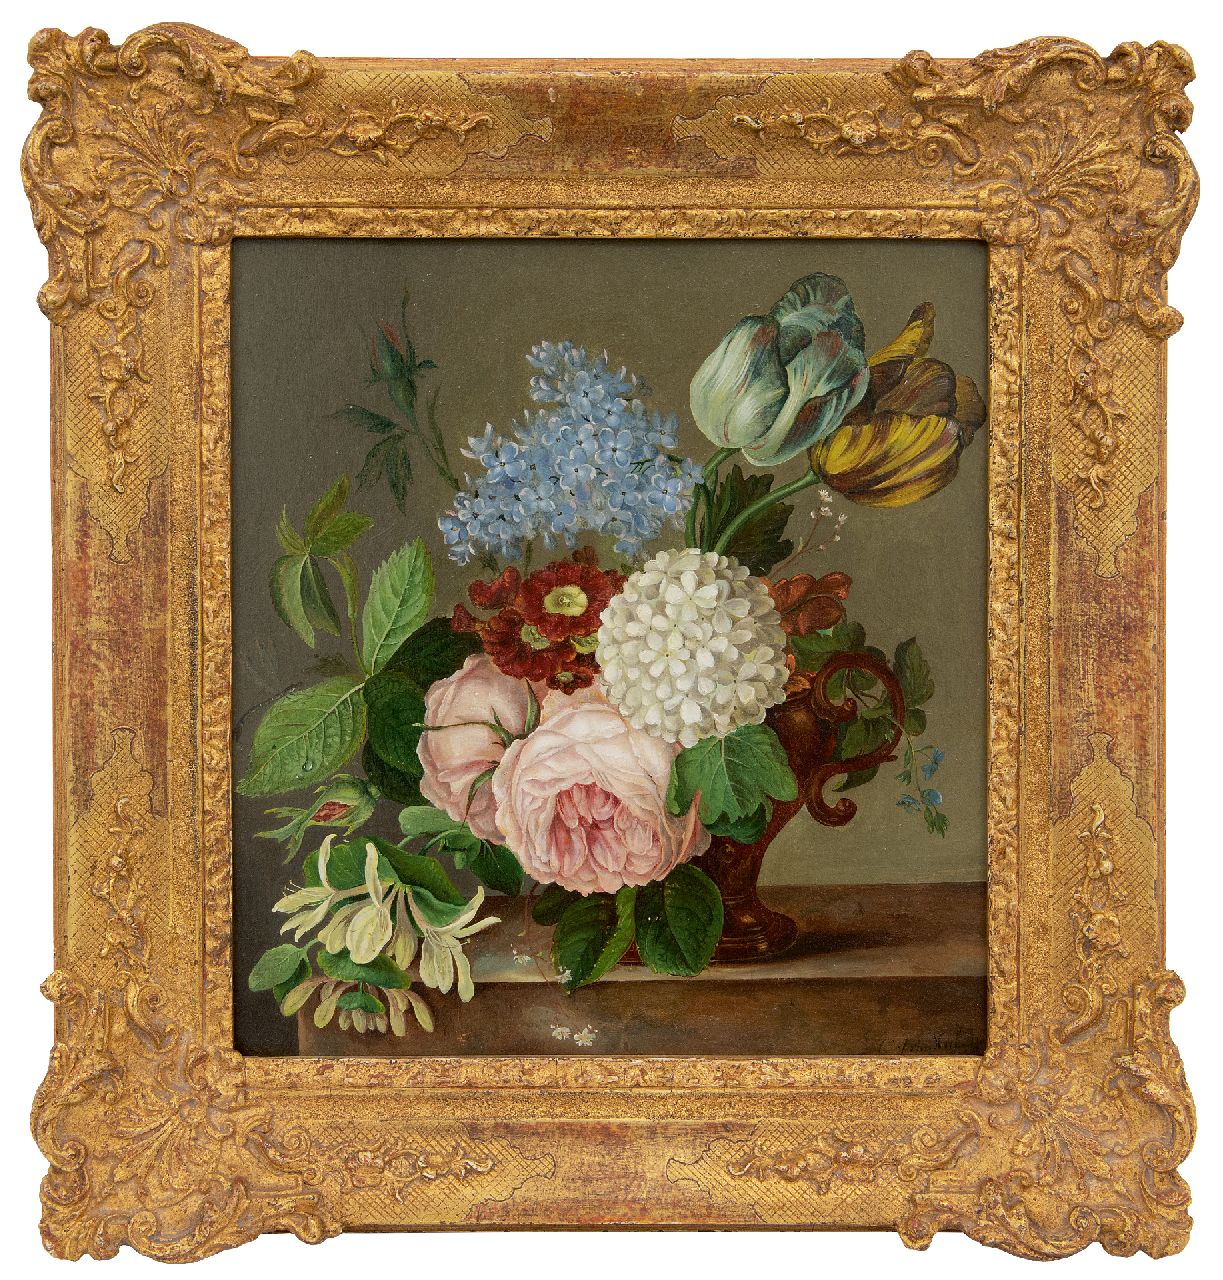 Hulstijn C.J. van | Cornelis Johannes 'Johan' van Hulstijn | Schilderijen te koop aangeboden | Bloemstilleven met rozen, tulpen, primula's en andere bloemen, olieverf op paneel 29,3 x 26,9 cm, gesigneerd rechtsonder